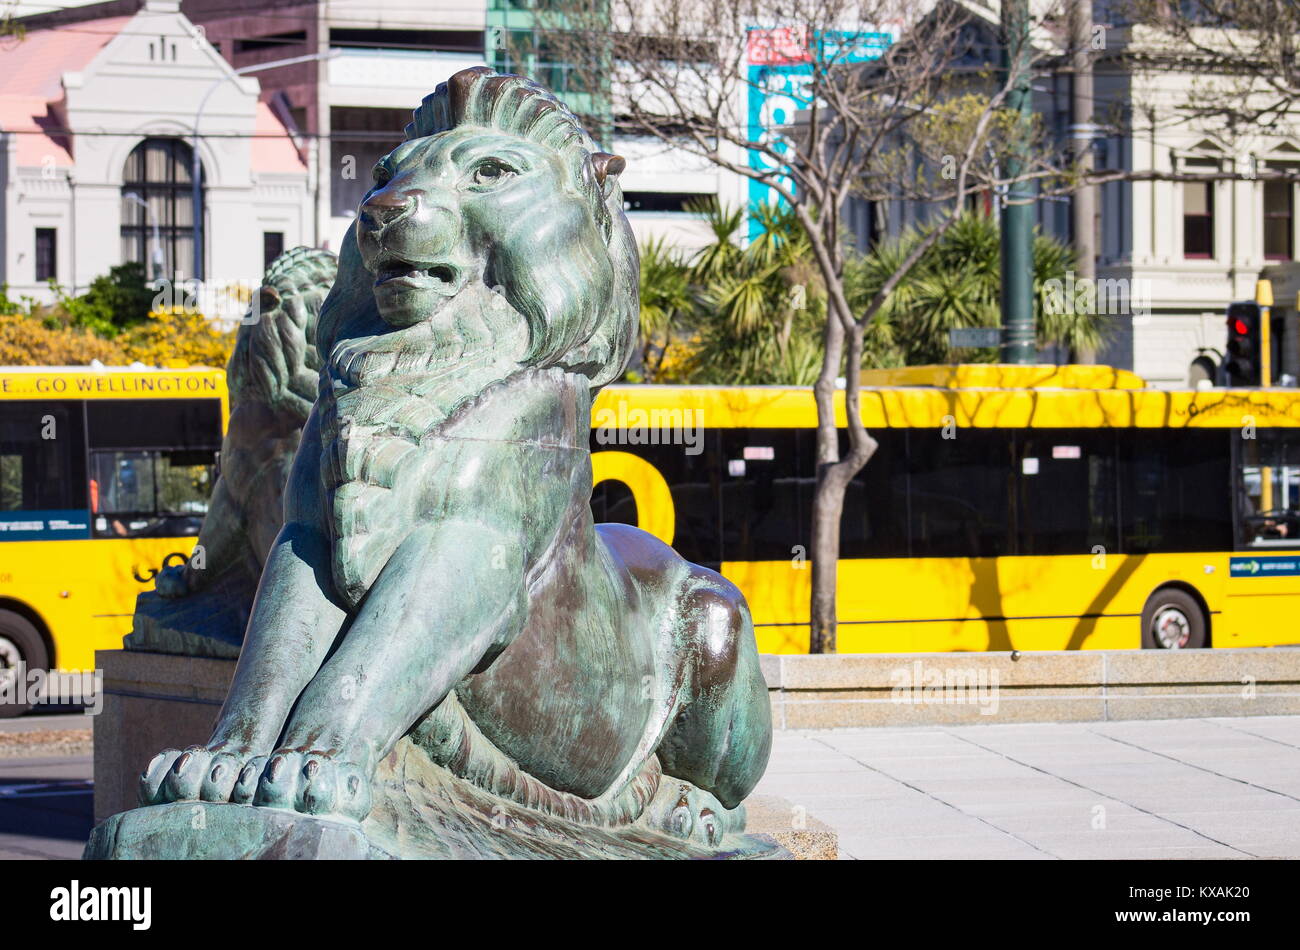 Wellington, Nouvelle-Zélande - 28 septembre, 2015 : Les Lions de Bronze à la base de l'Édifice Wellington cénotaphe avec les bus de la ville en arrière-plan, situé sur l'i Banque D'Images